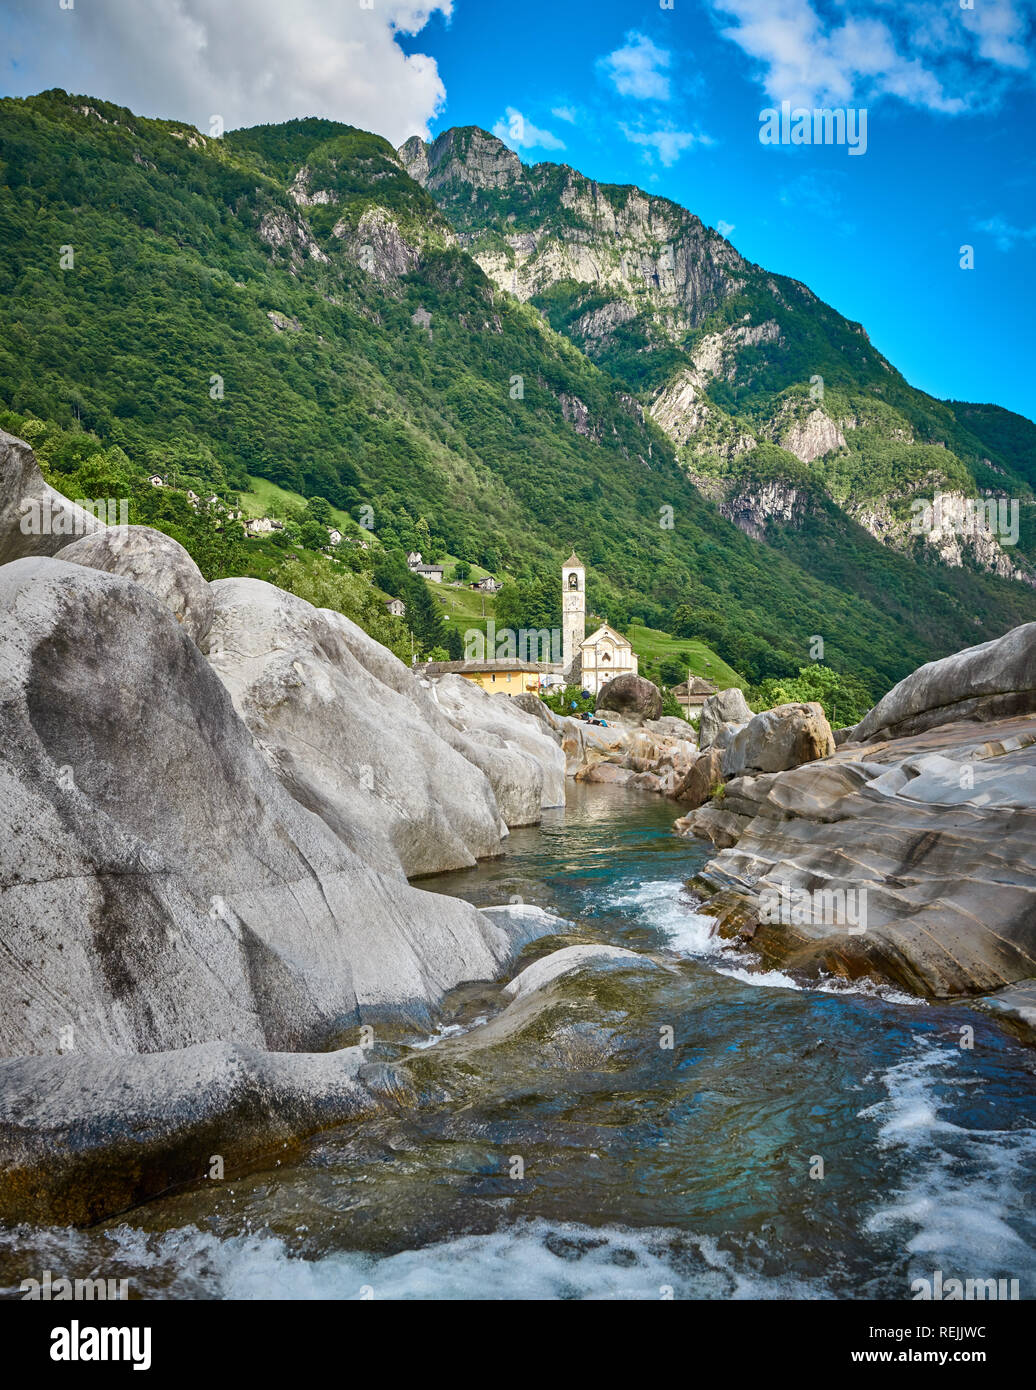 Panorama des romantischen Dorfes Lavertezzo, Verzasca Tal, Tessin, Schweiz. Kirche, Fluss, grüne Bäume und blauer Himmel im Juni, im Sommer. Stockfoto